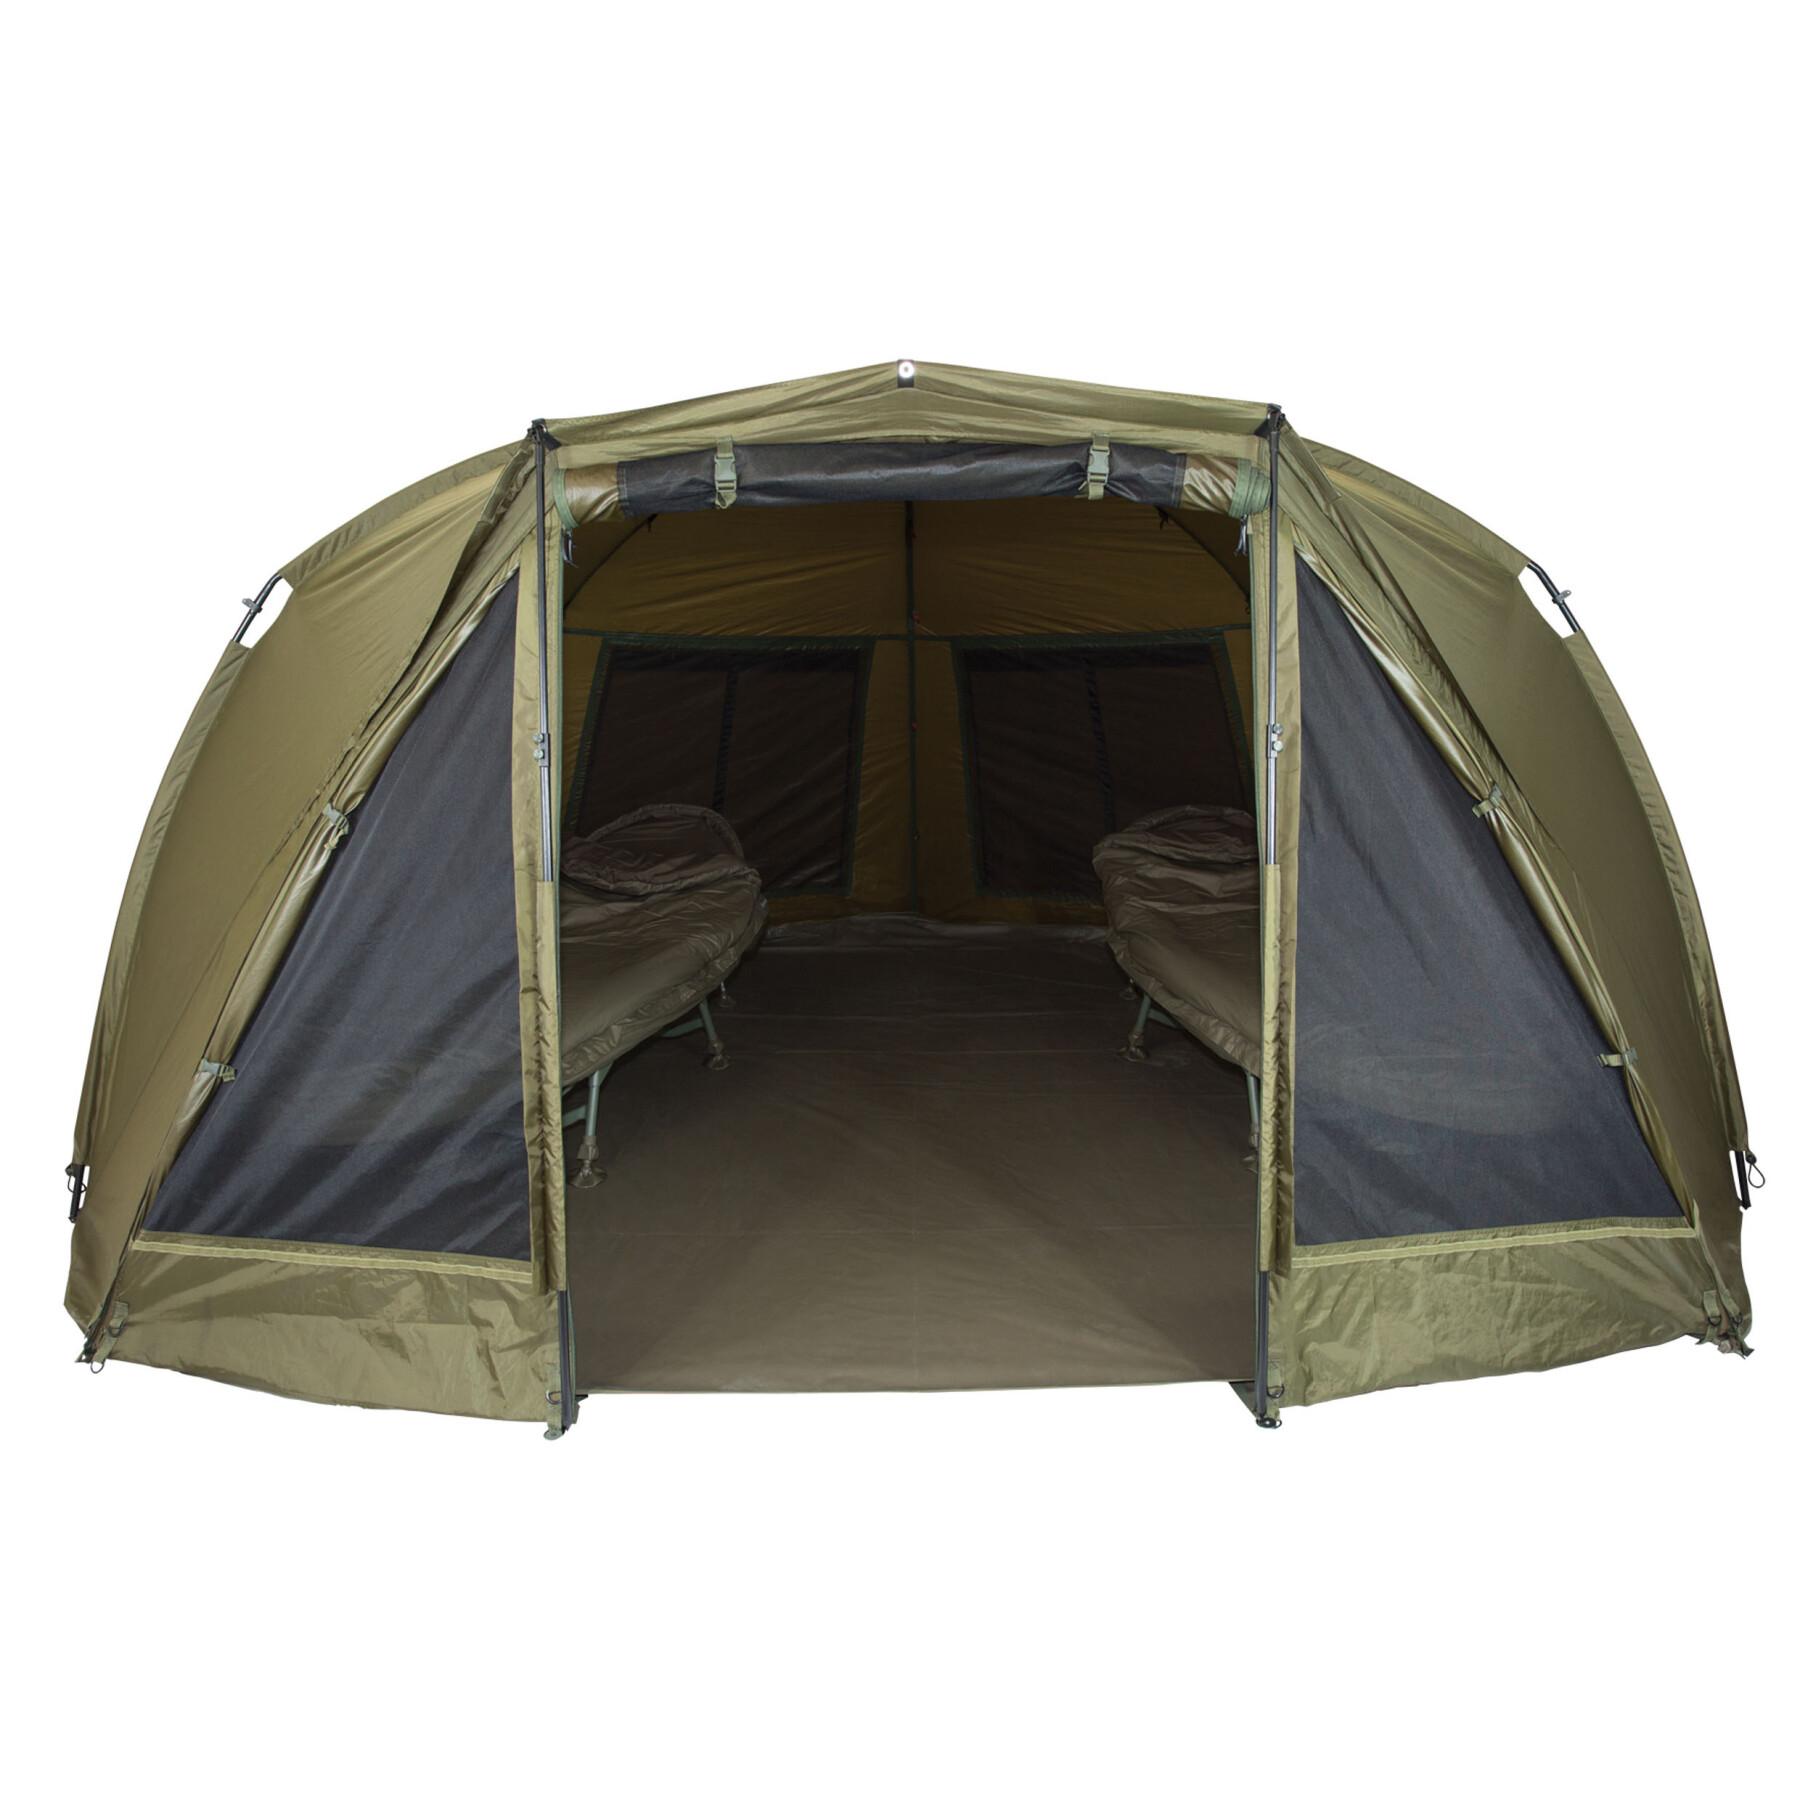 Tente Trakker tempest 200 shelter